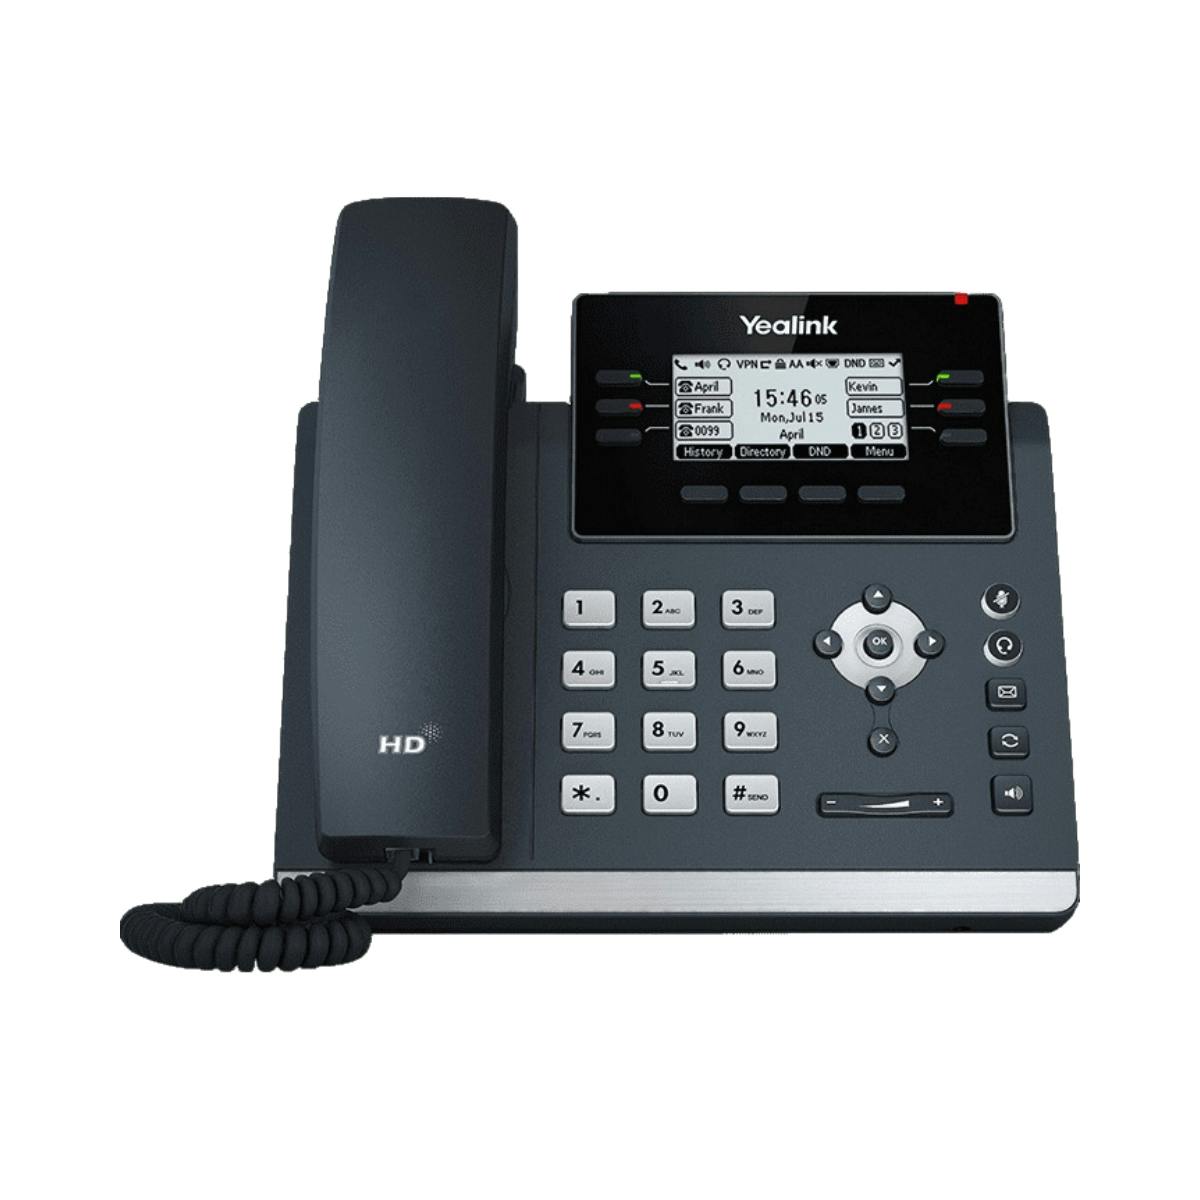 A Yealink T42U VoIP Phone